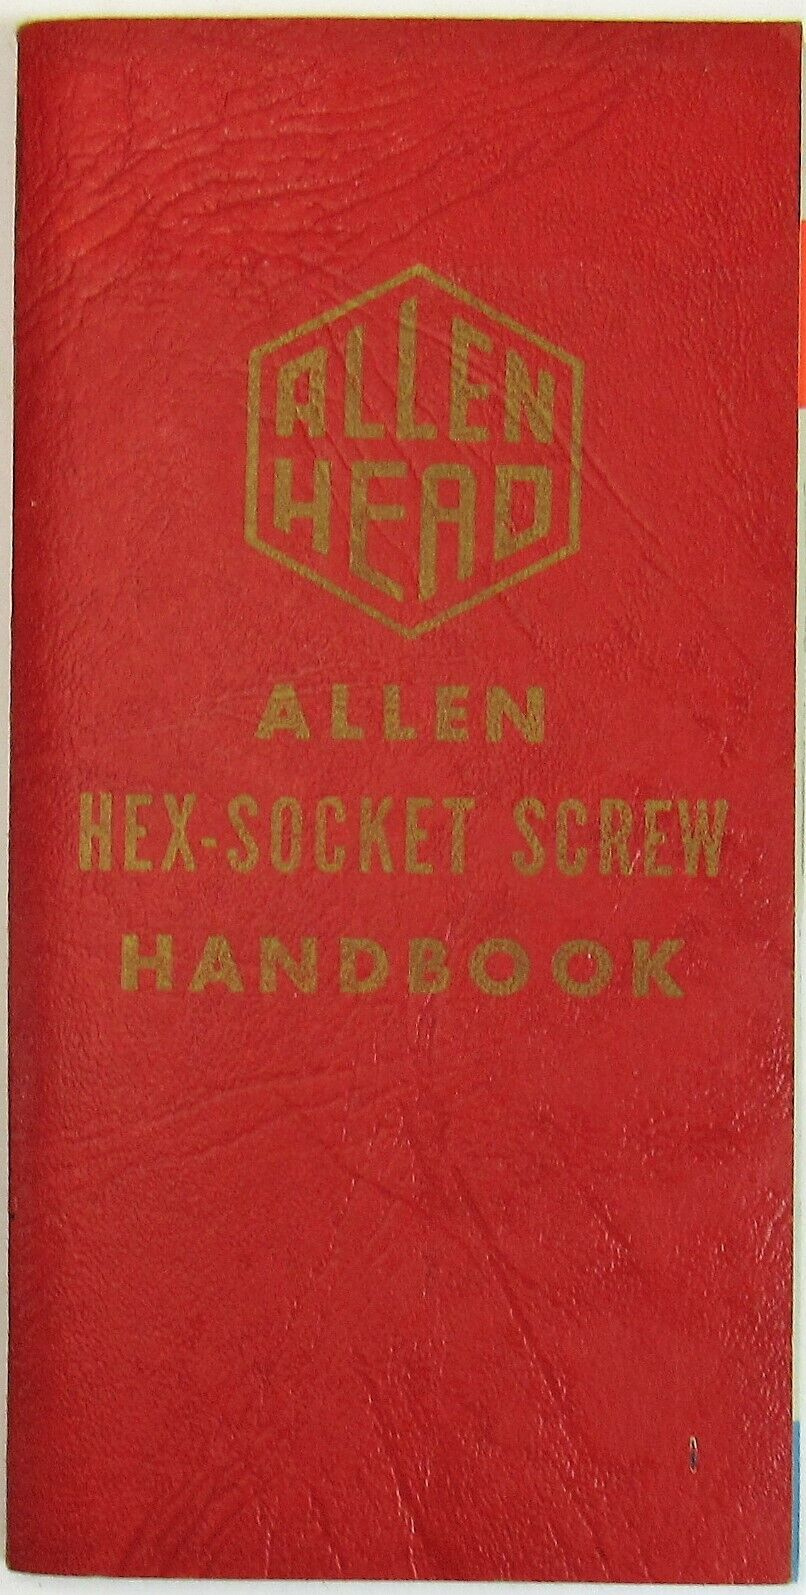 1957 Allen Head Hex Socket Screw Handbook Hartford CT Machinist Hardware Book 